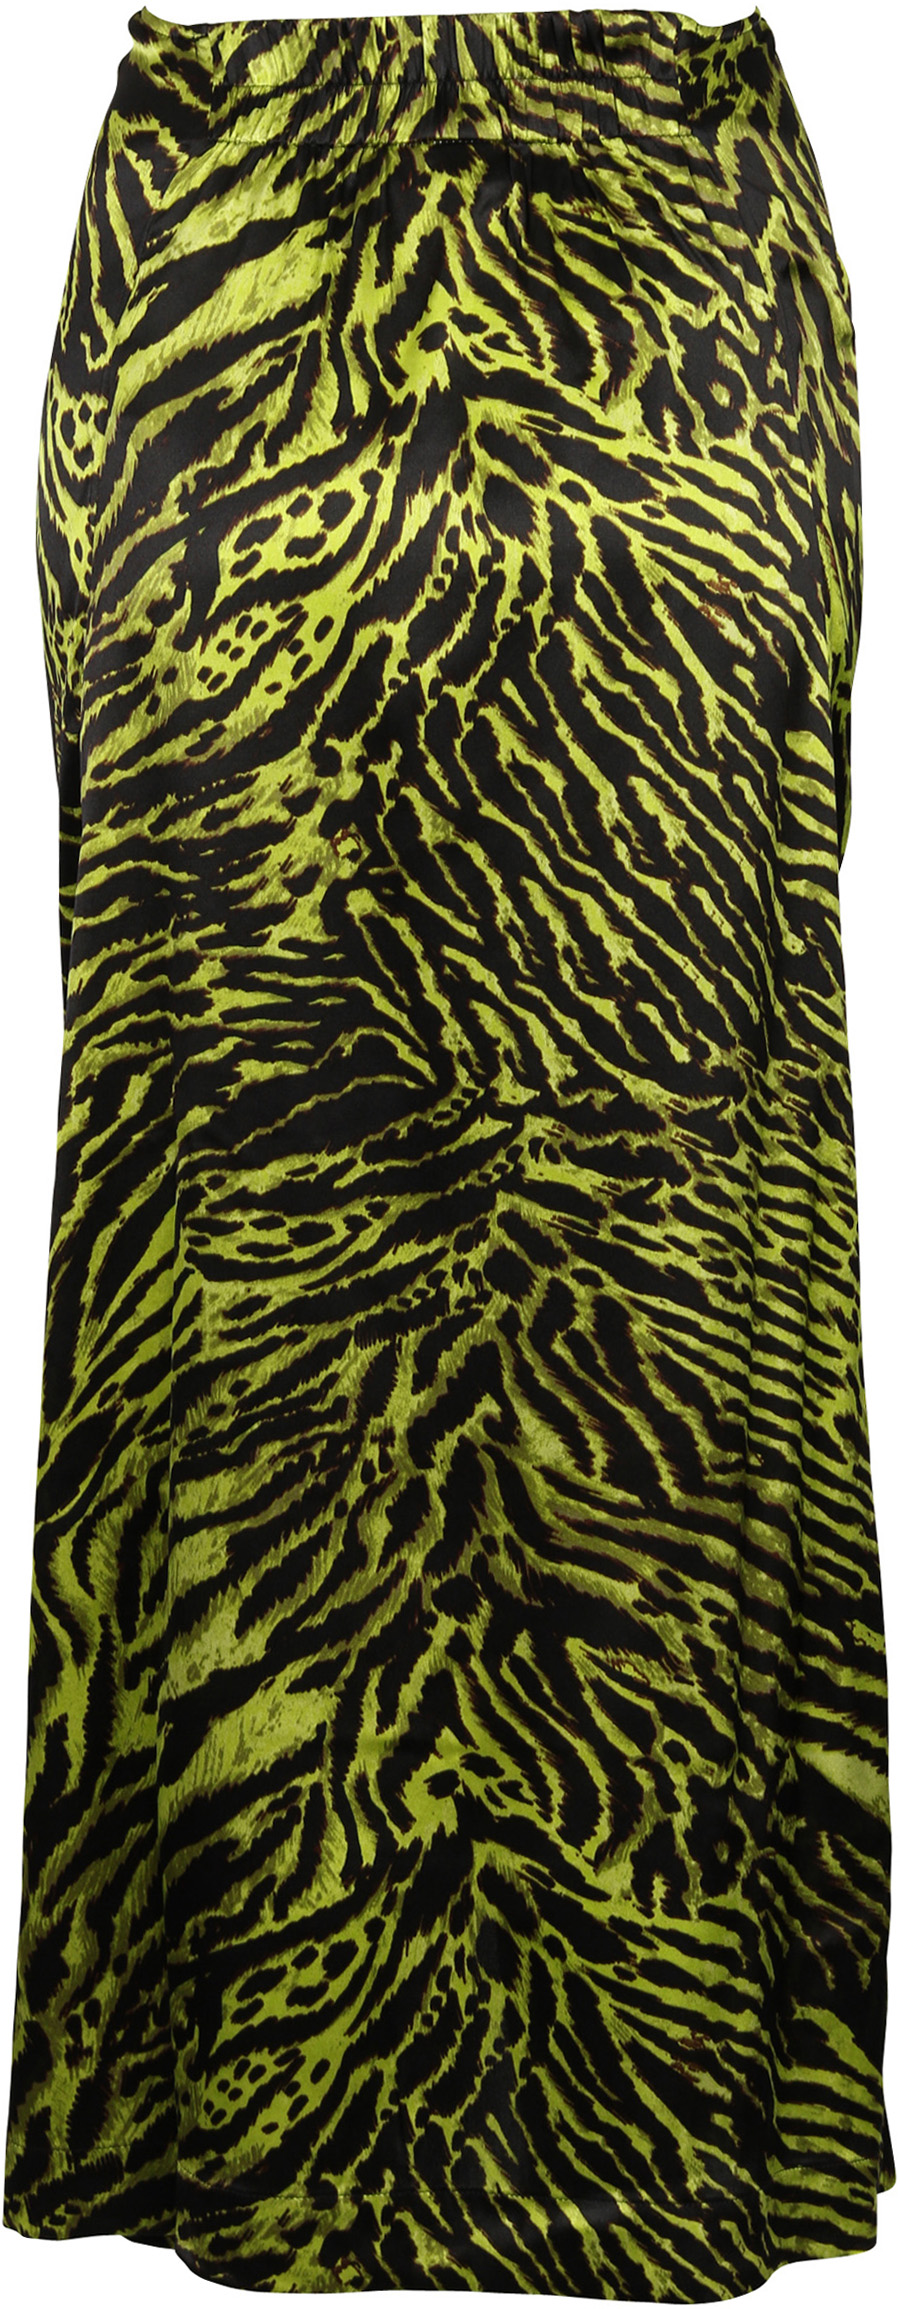 Ganni Silk Stretch Skirt Lime Tiger Print